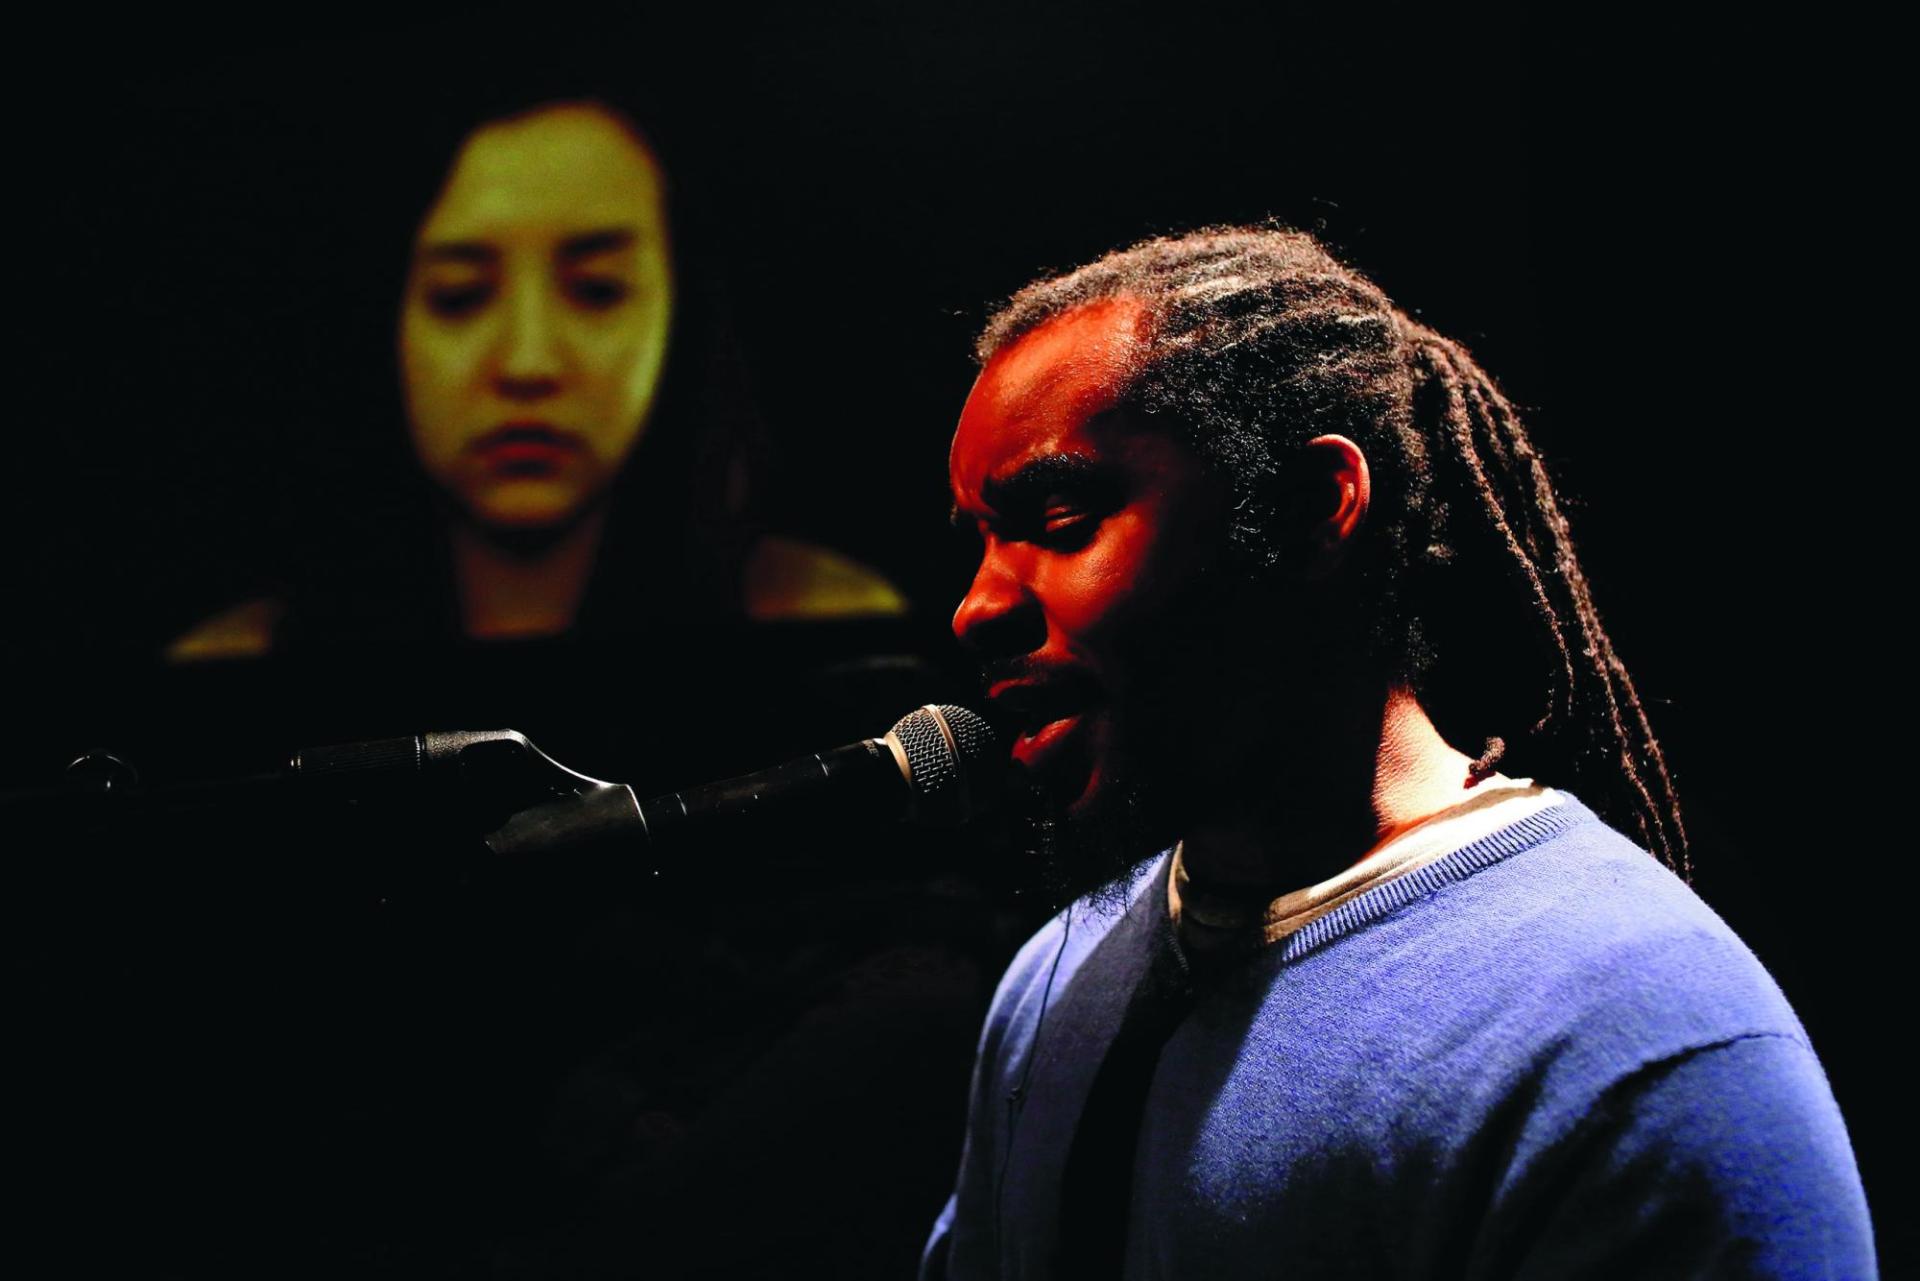 Eine Person of Color singt im Vordergrund in ein Mikrofon und im Hintergrund sieht man auf einem großen Bildschirm ein Gesicht.